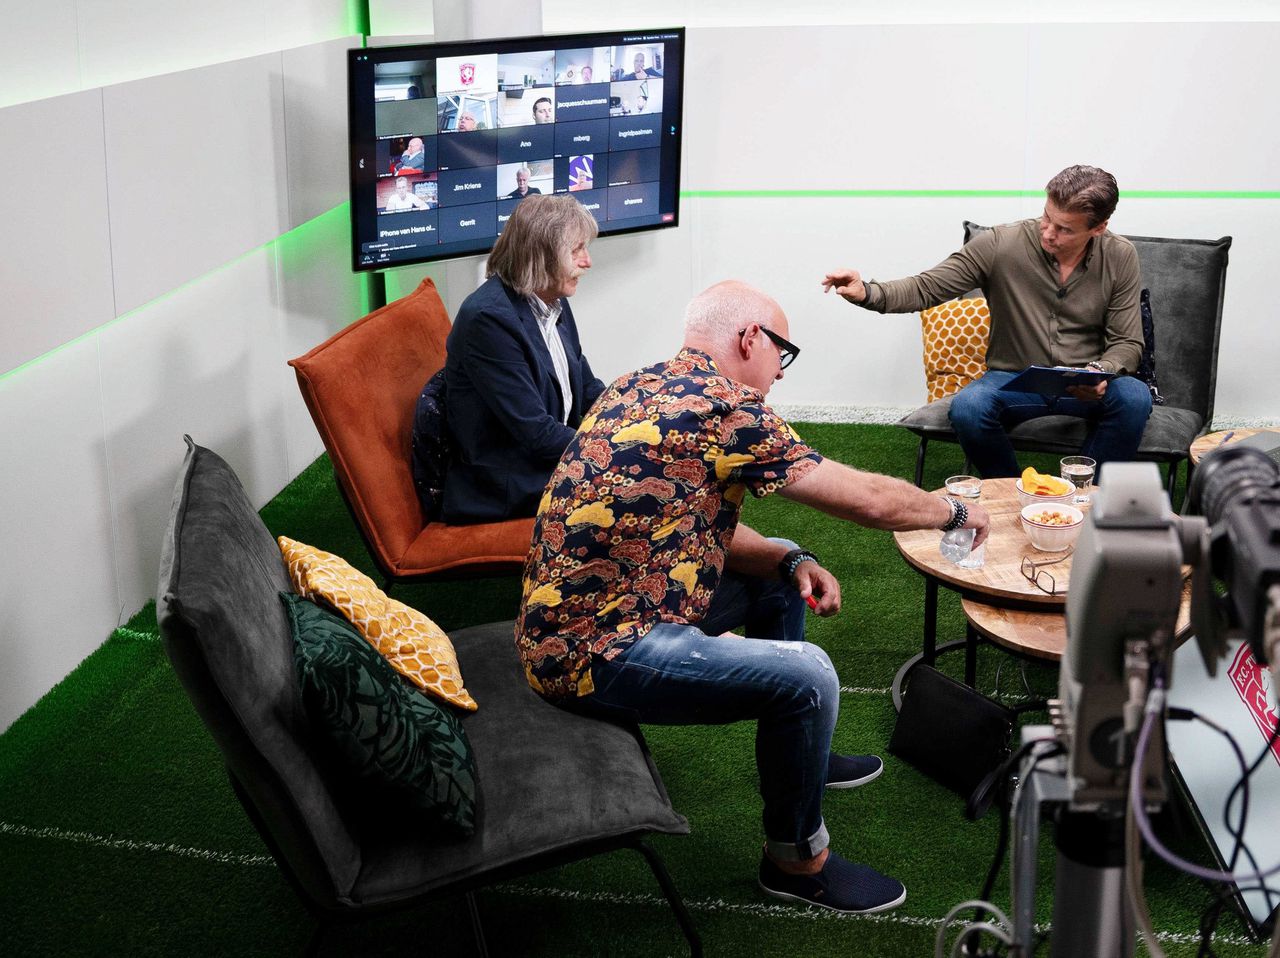 René van der Gijp, Johan Derksen en Wilfred Genee van het programma Veronica Inside, tijdens een online uitzending voor de businessclub van FC Twente.